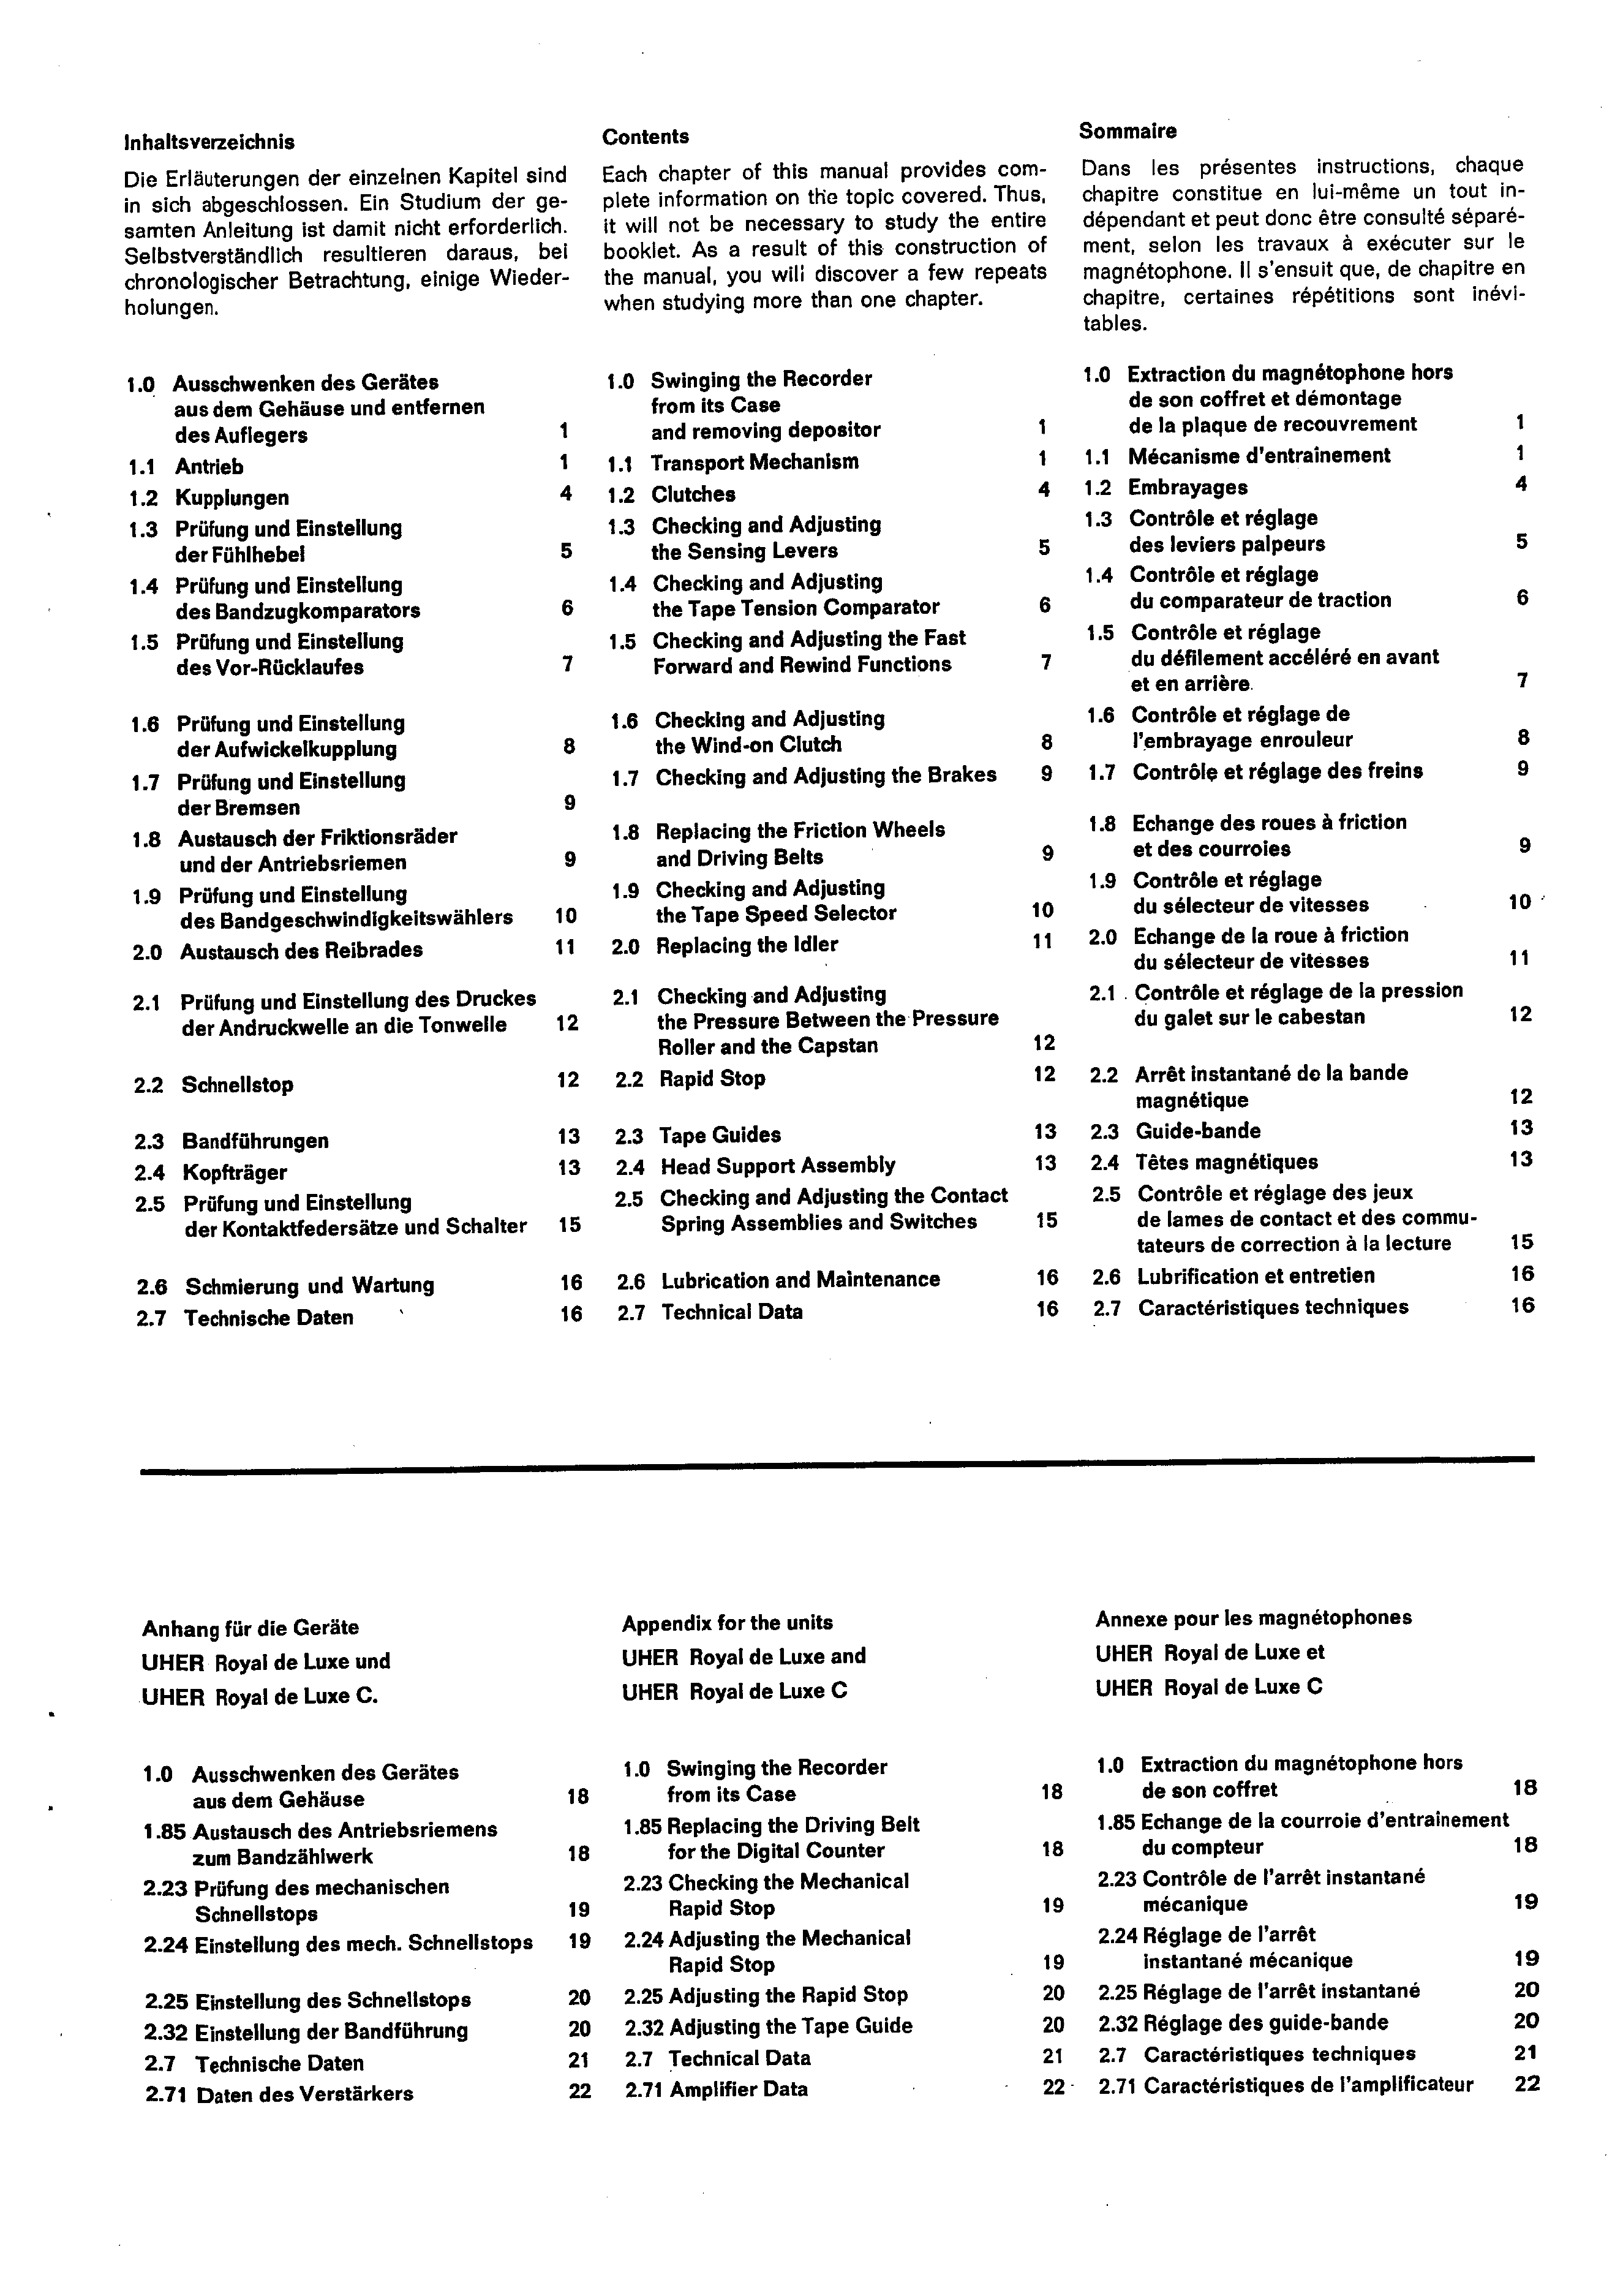 Service Manual-Anleitung für Uher SG 560,Royal de Luxe,Royal de Luxe C 